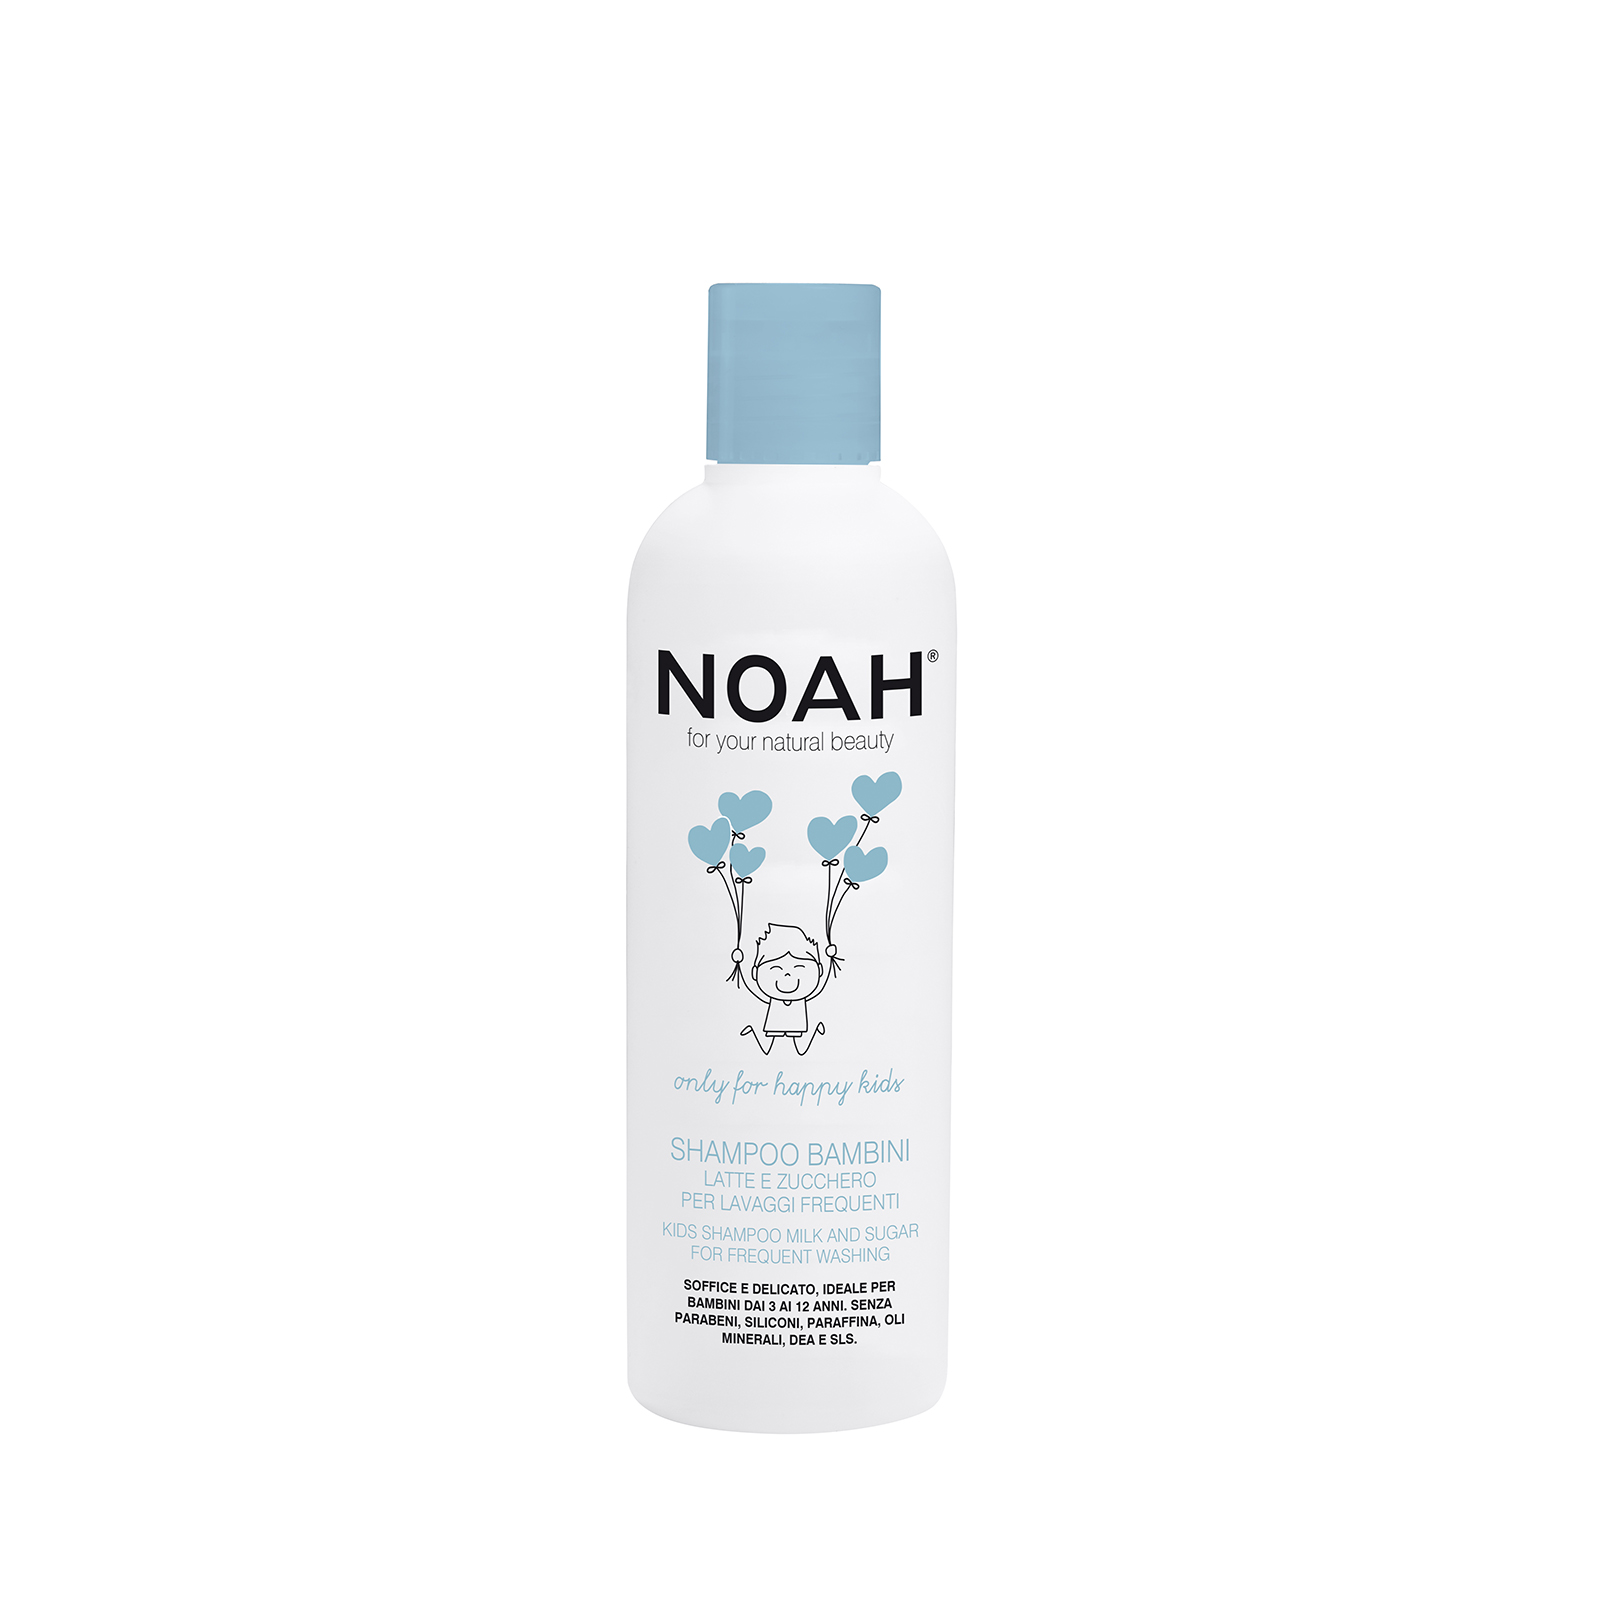 NOAH Shampoo Bambini